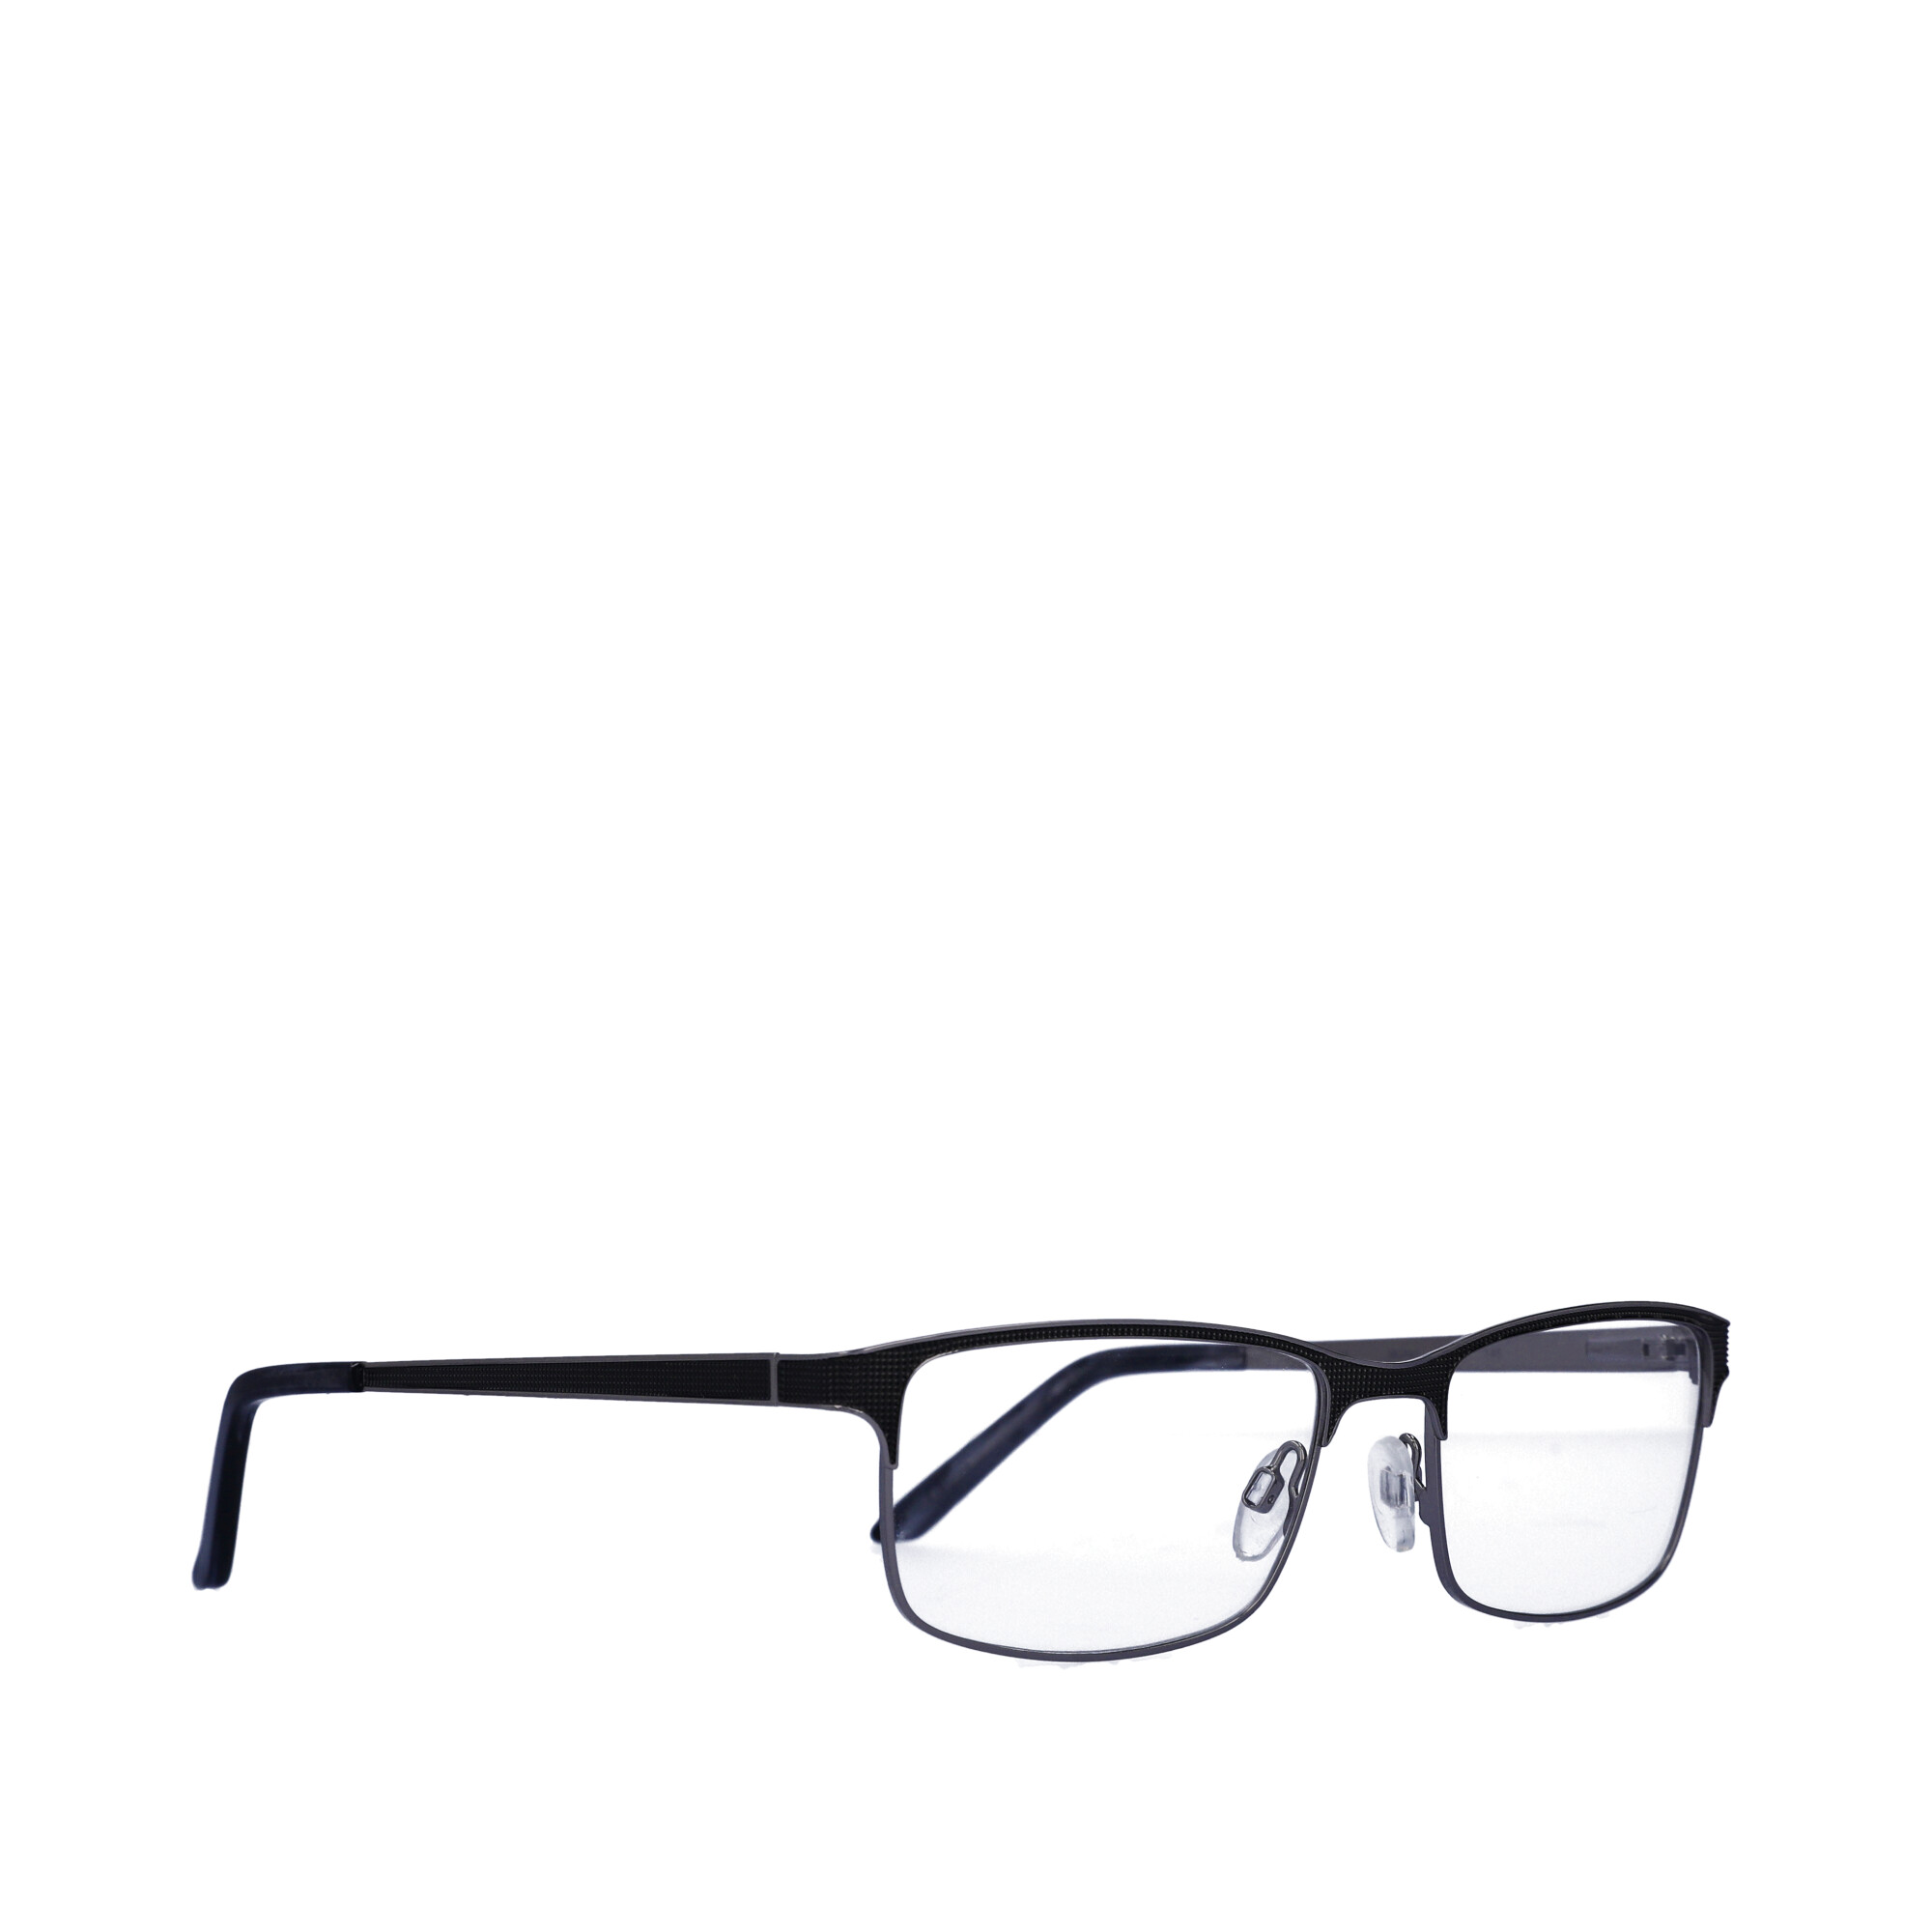 Walmart Men's Rx'able Eyeglasses, Mop41, Dark Grey, 54-18-145 - image 2 of 13